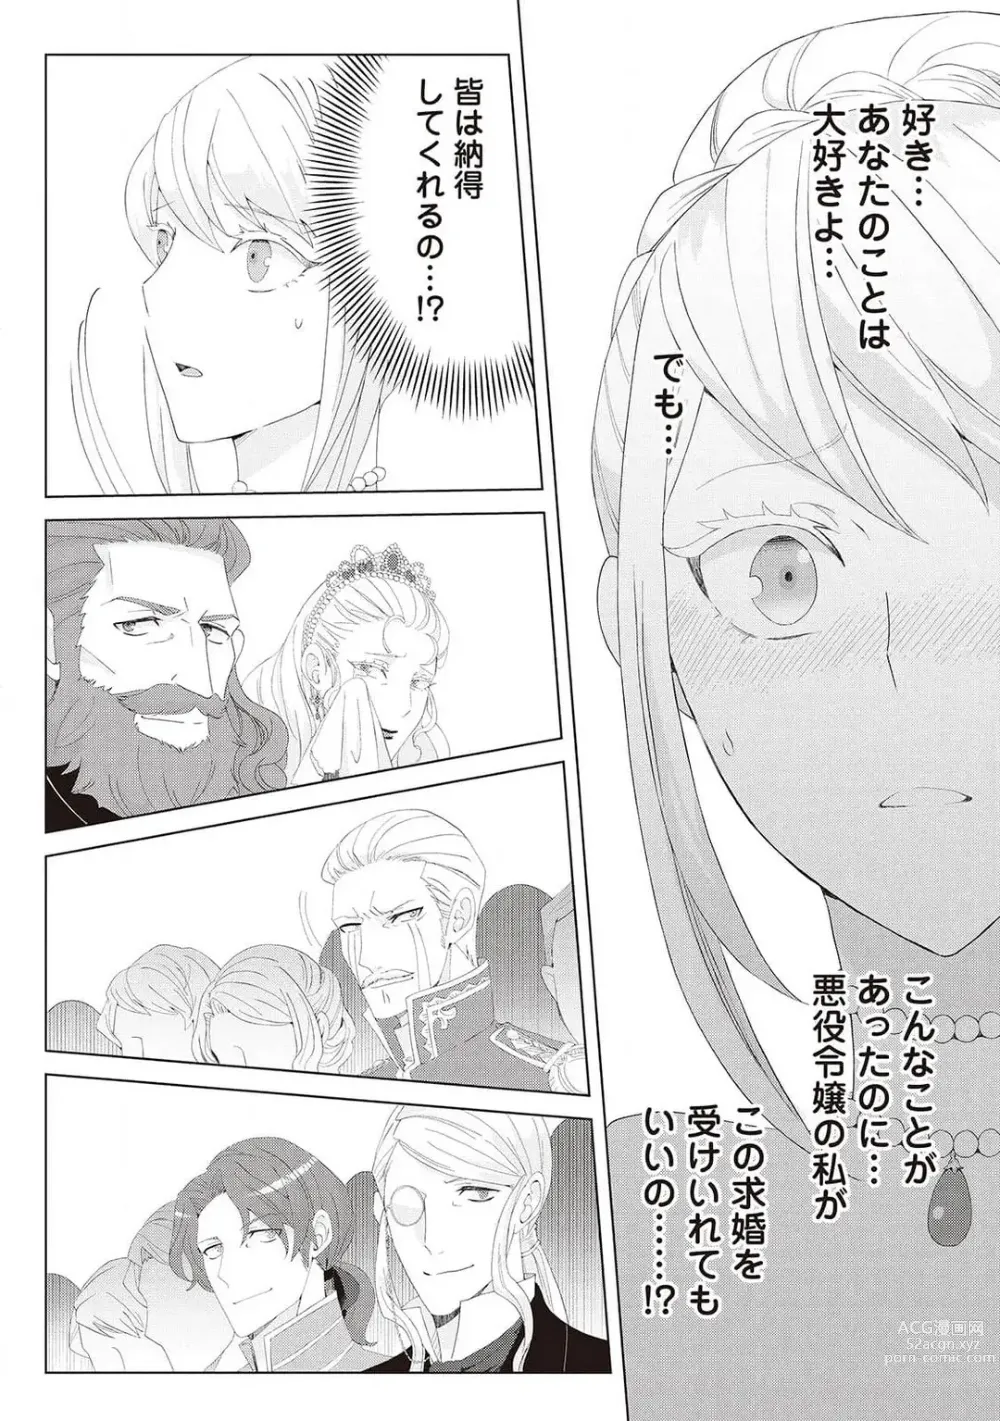 Page 413 of manga 悪役令嬢に転生したけど、破局したはずのカタブツ王太子に溺愛されてます！？ 1-18